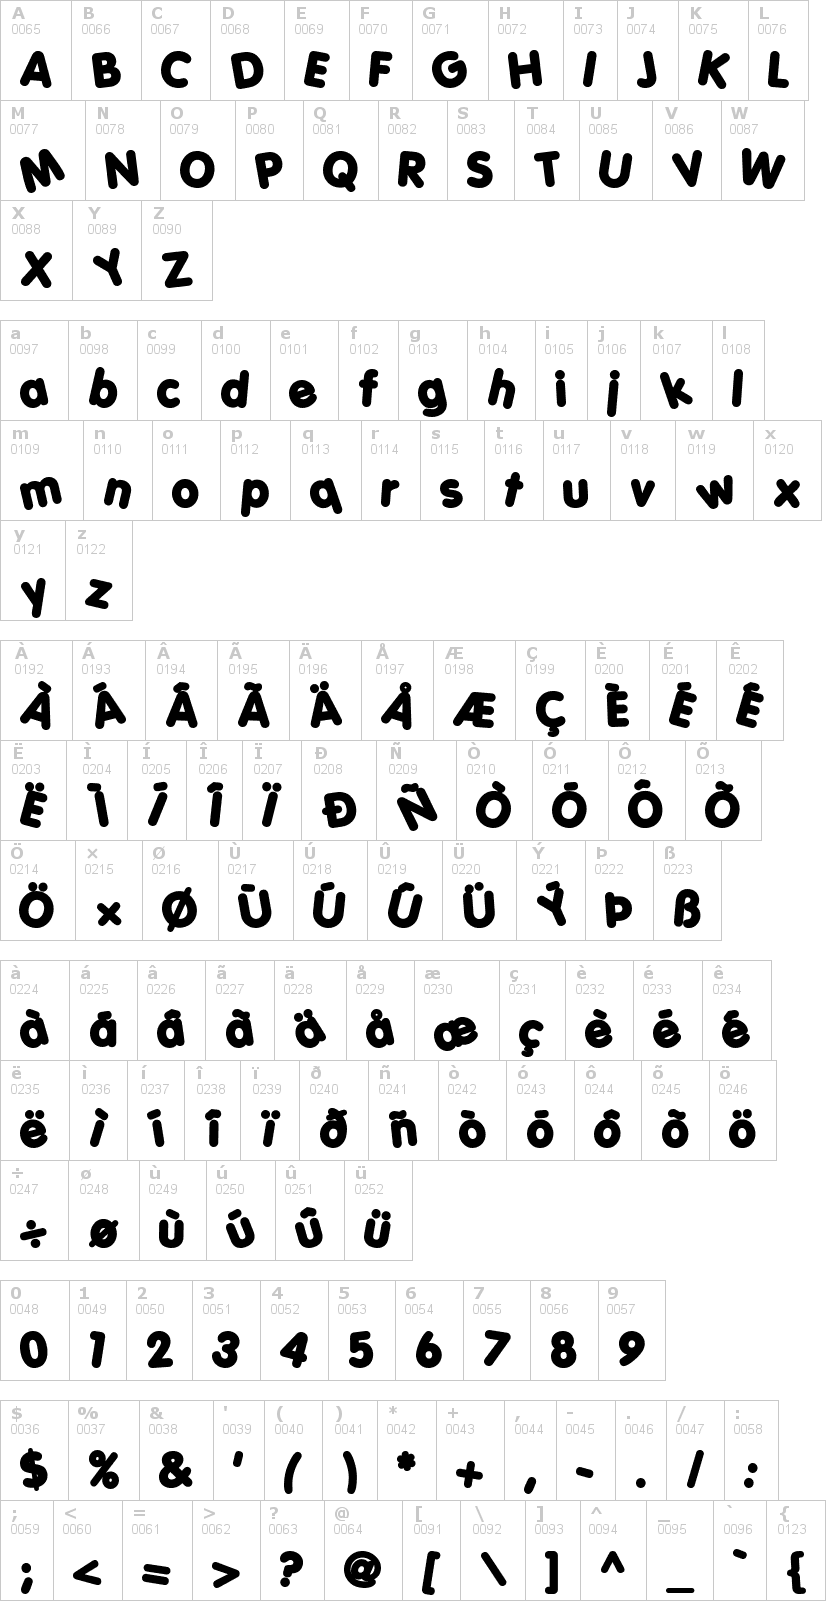 Lettere dell'alfabeto del font porkys con le quali è possibile realizzare adesivi prespaziati